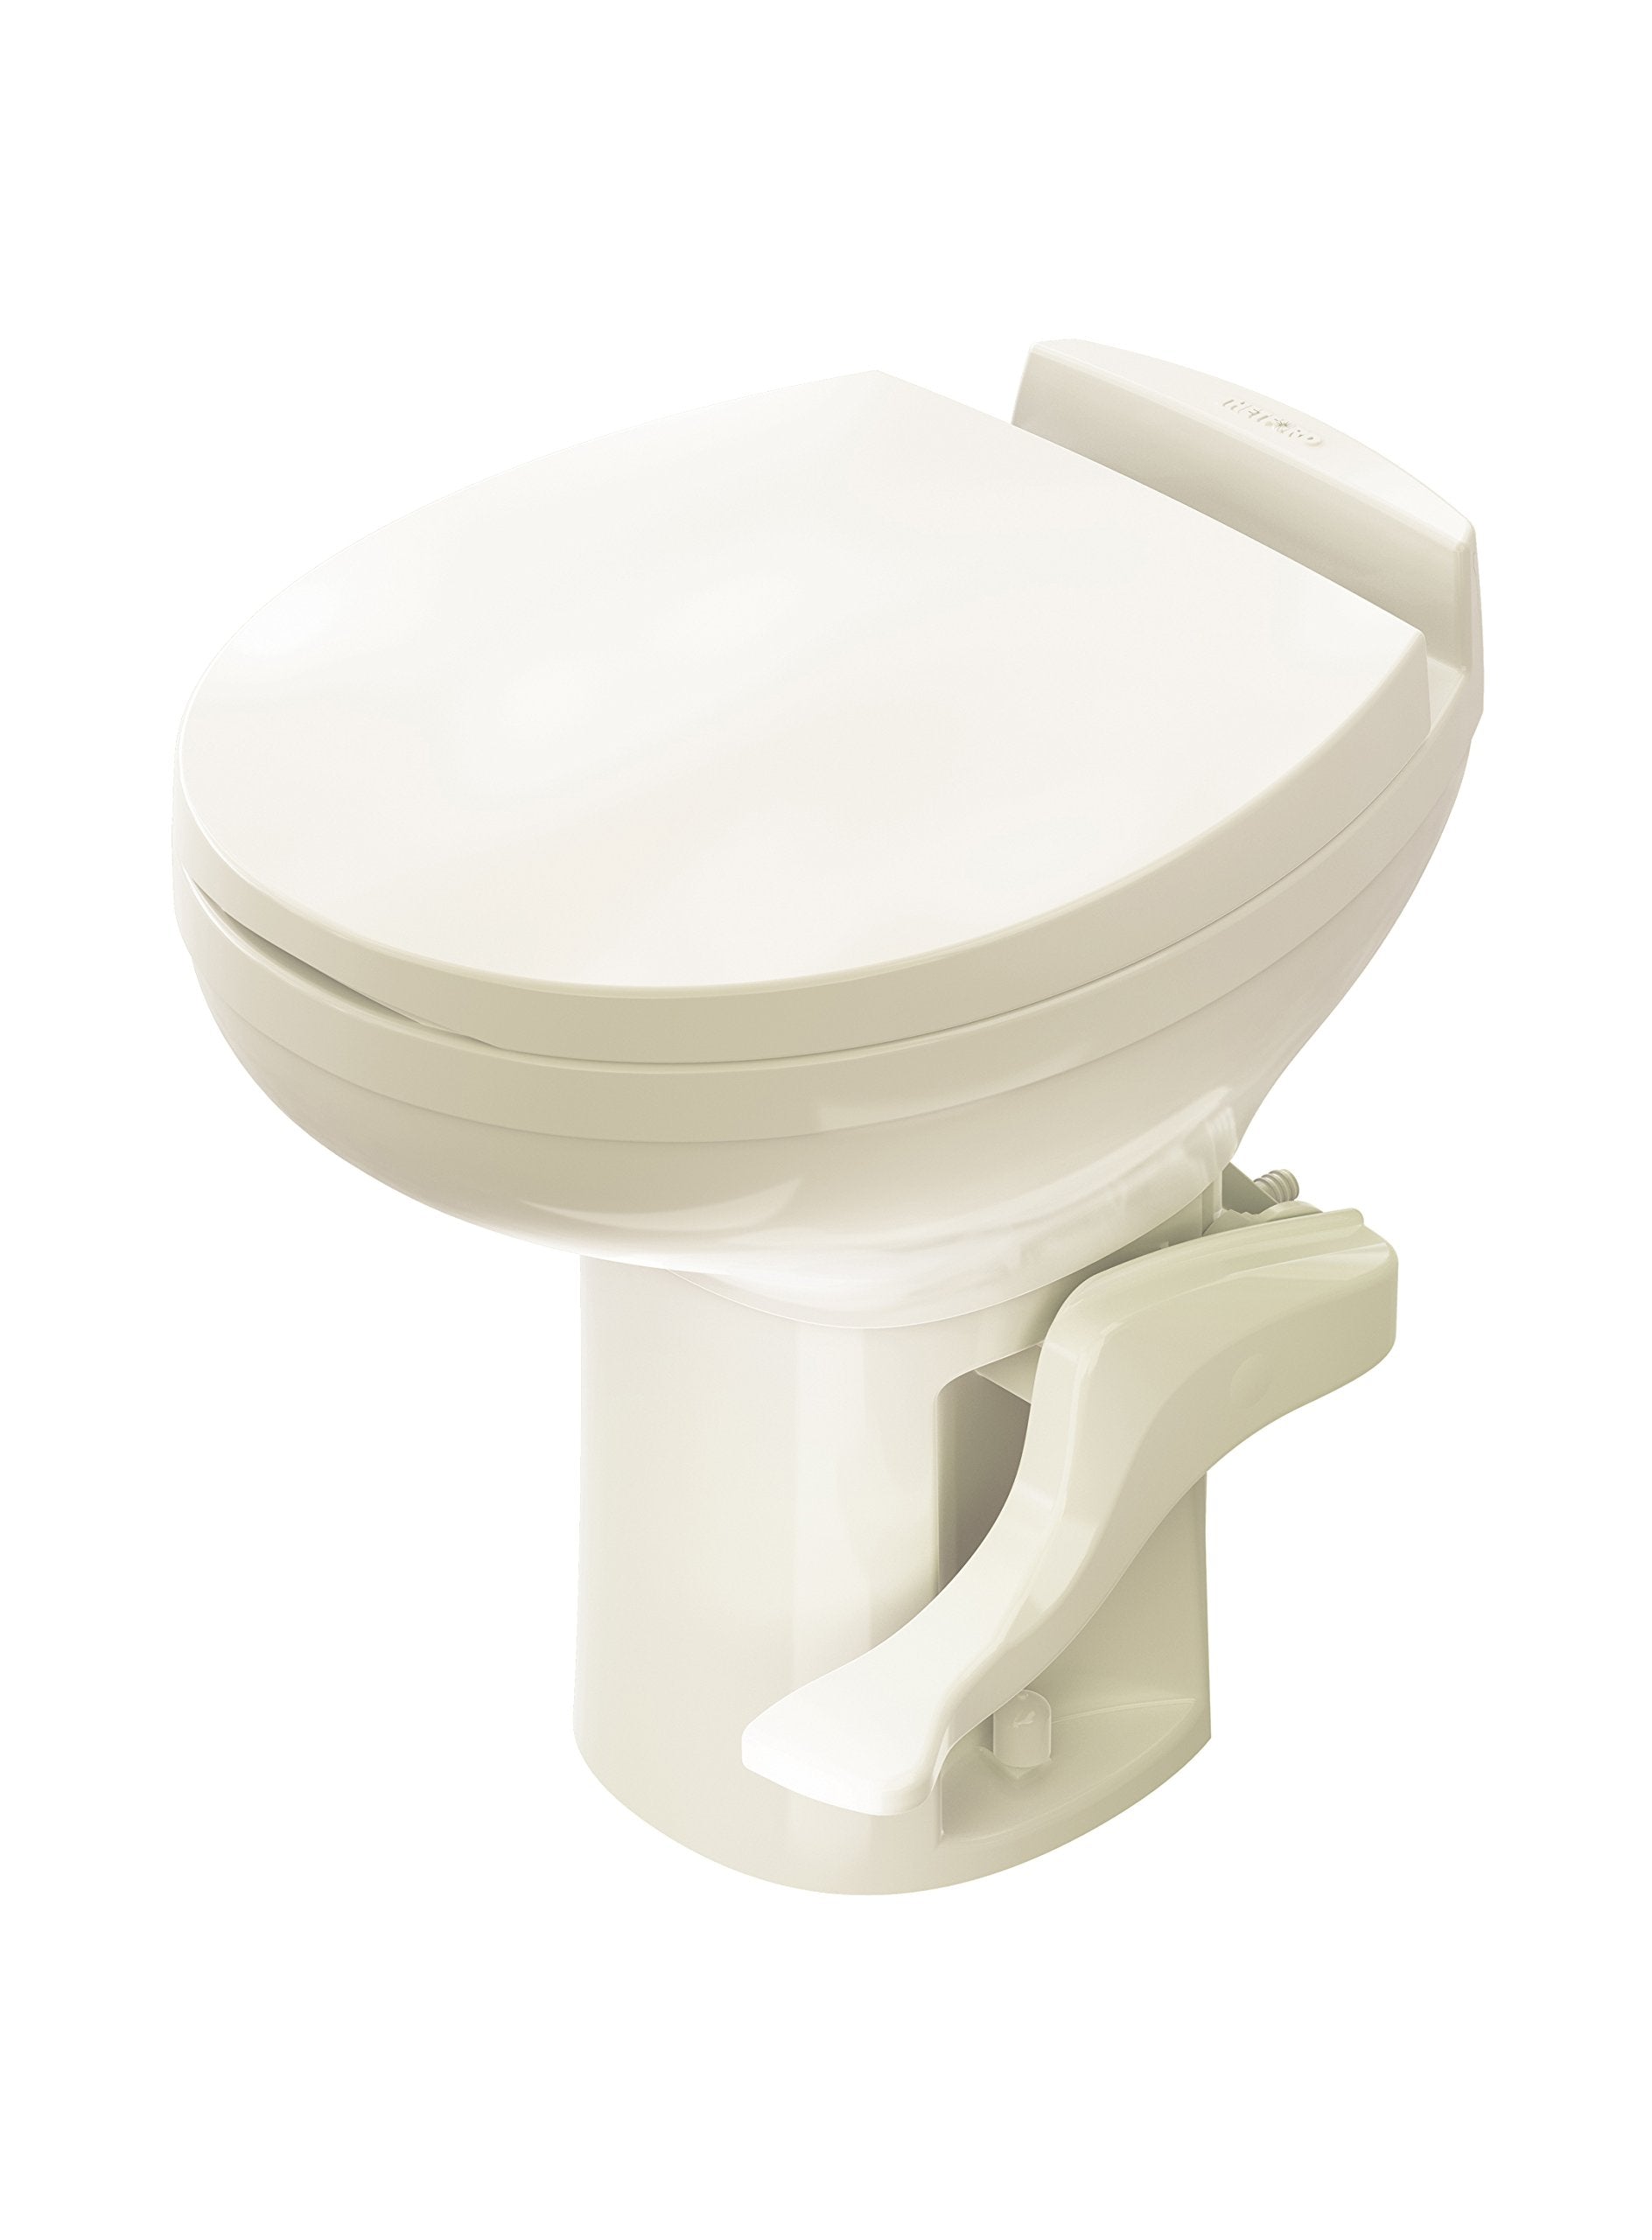 Aqua Magic Residence RV Toilet / High Profile / Bone - Thetford 42171